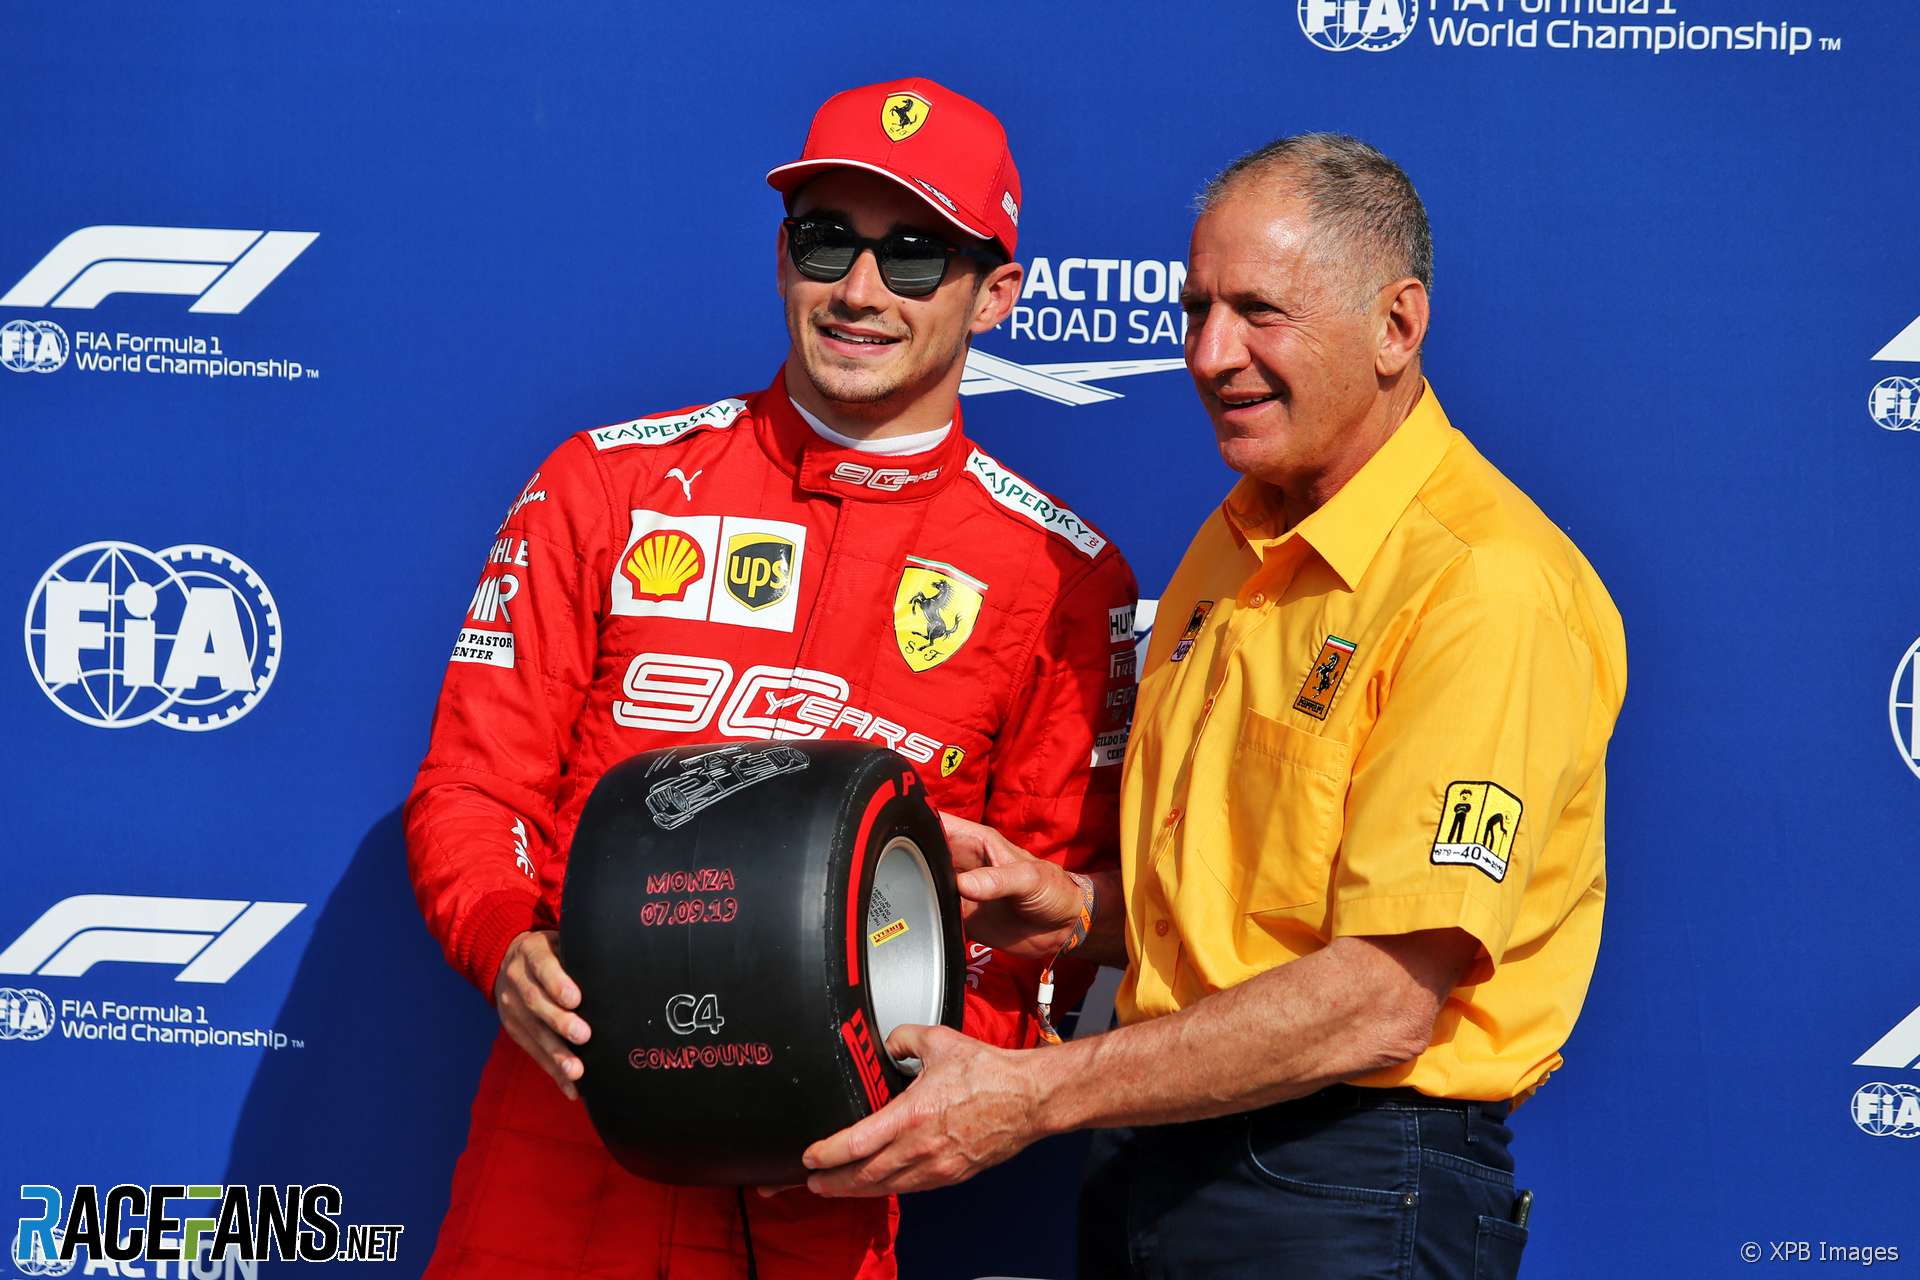 Charles Leclerc, Jody Scheckter, Monza, 2019